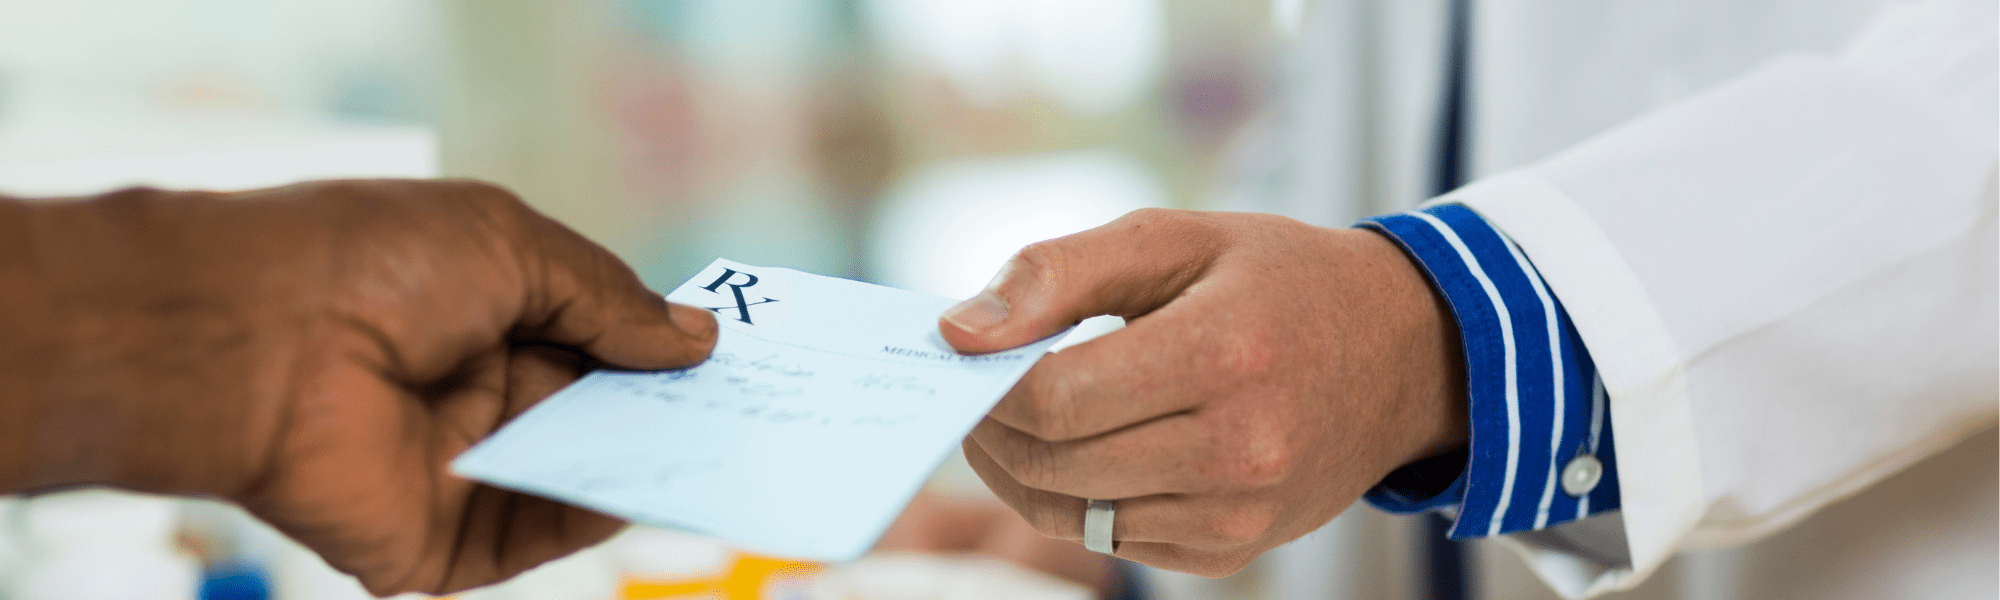 pharmacist handing prescription slip to customer 